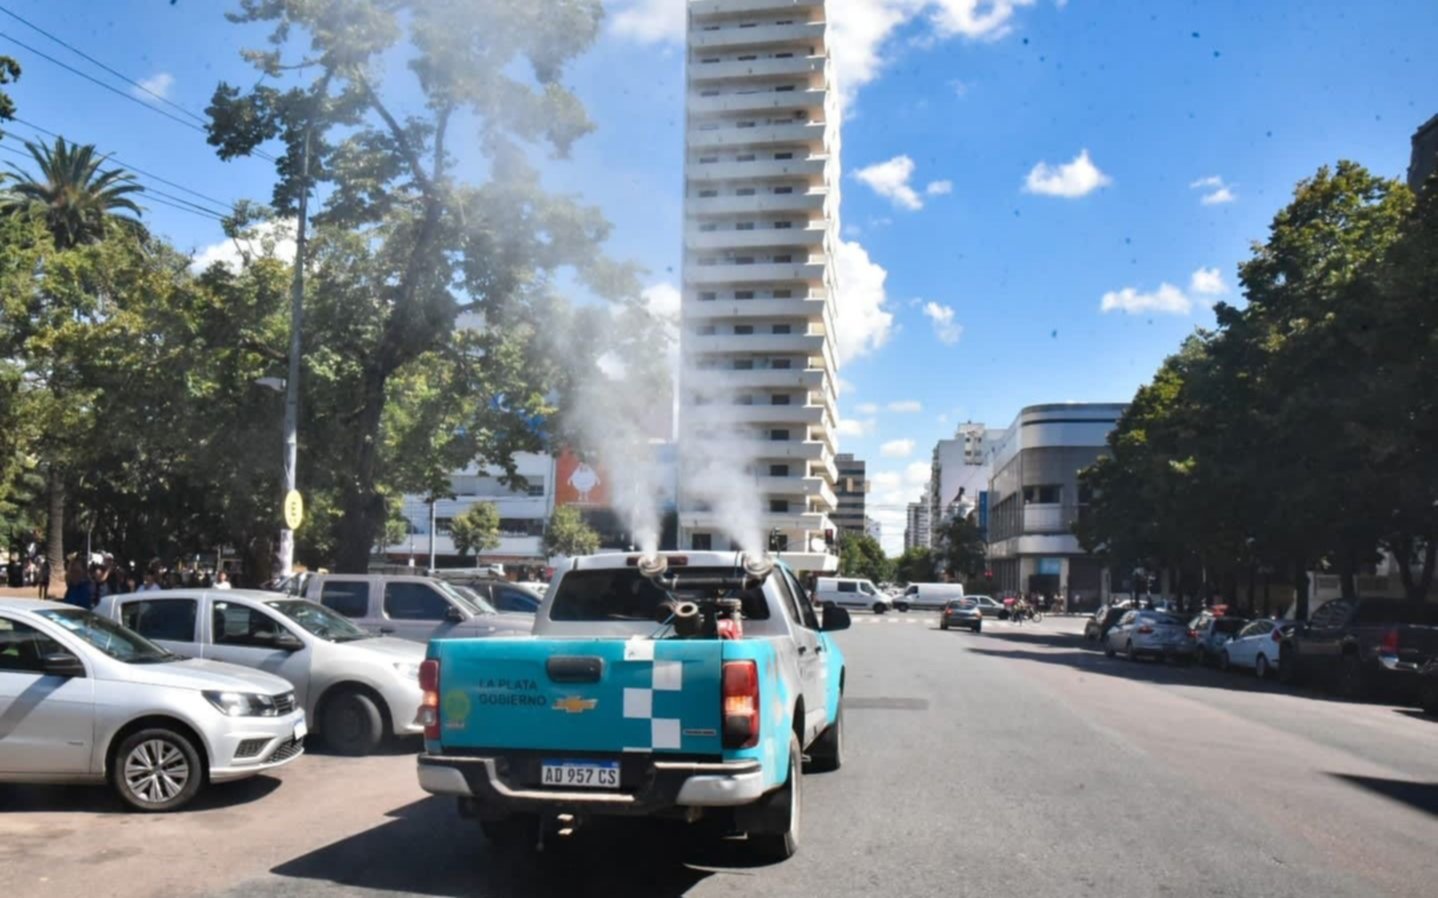  La Plata en alerta por el dengue: cuando sería el pico de contagios y el efecto Semana Santa